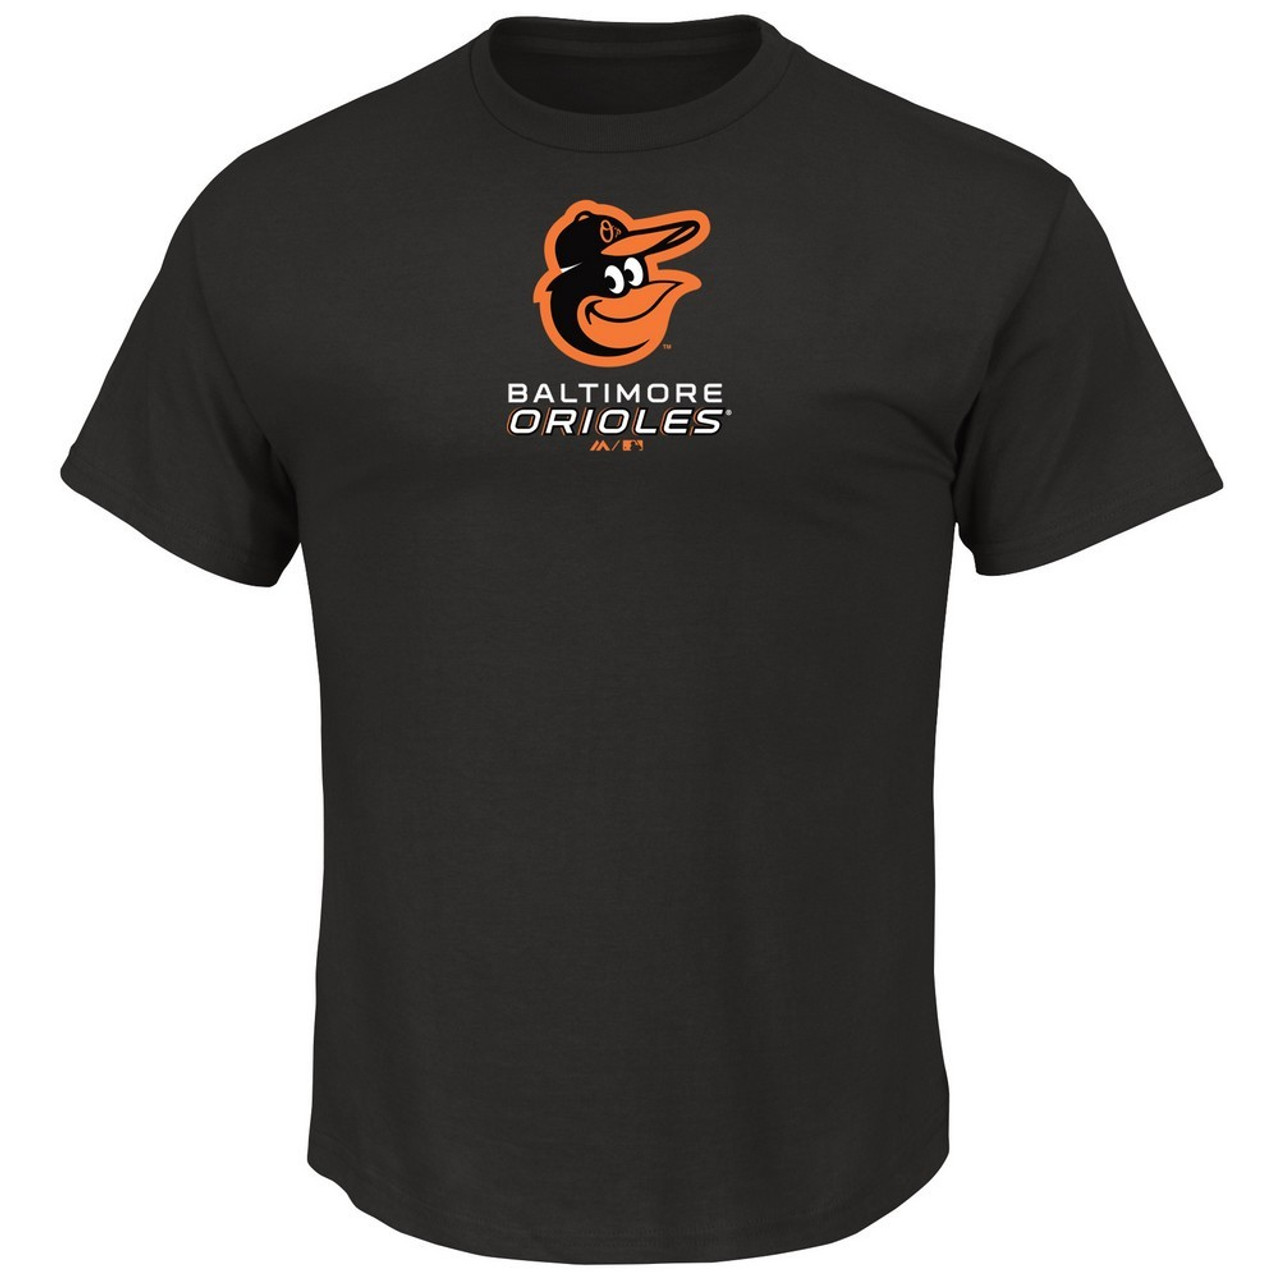 Men's Camo Baltimore Orioles Team T-shirt